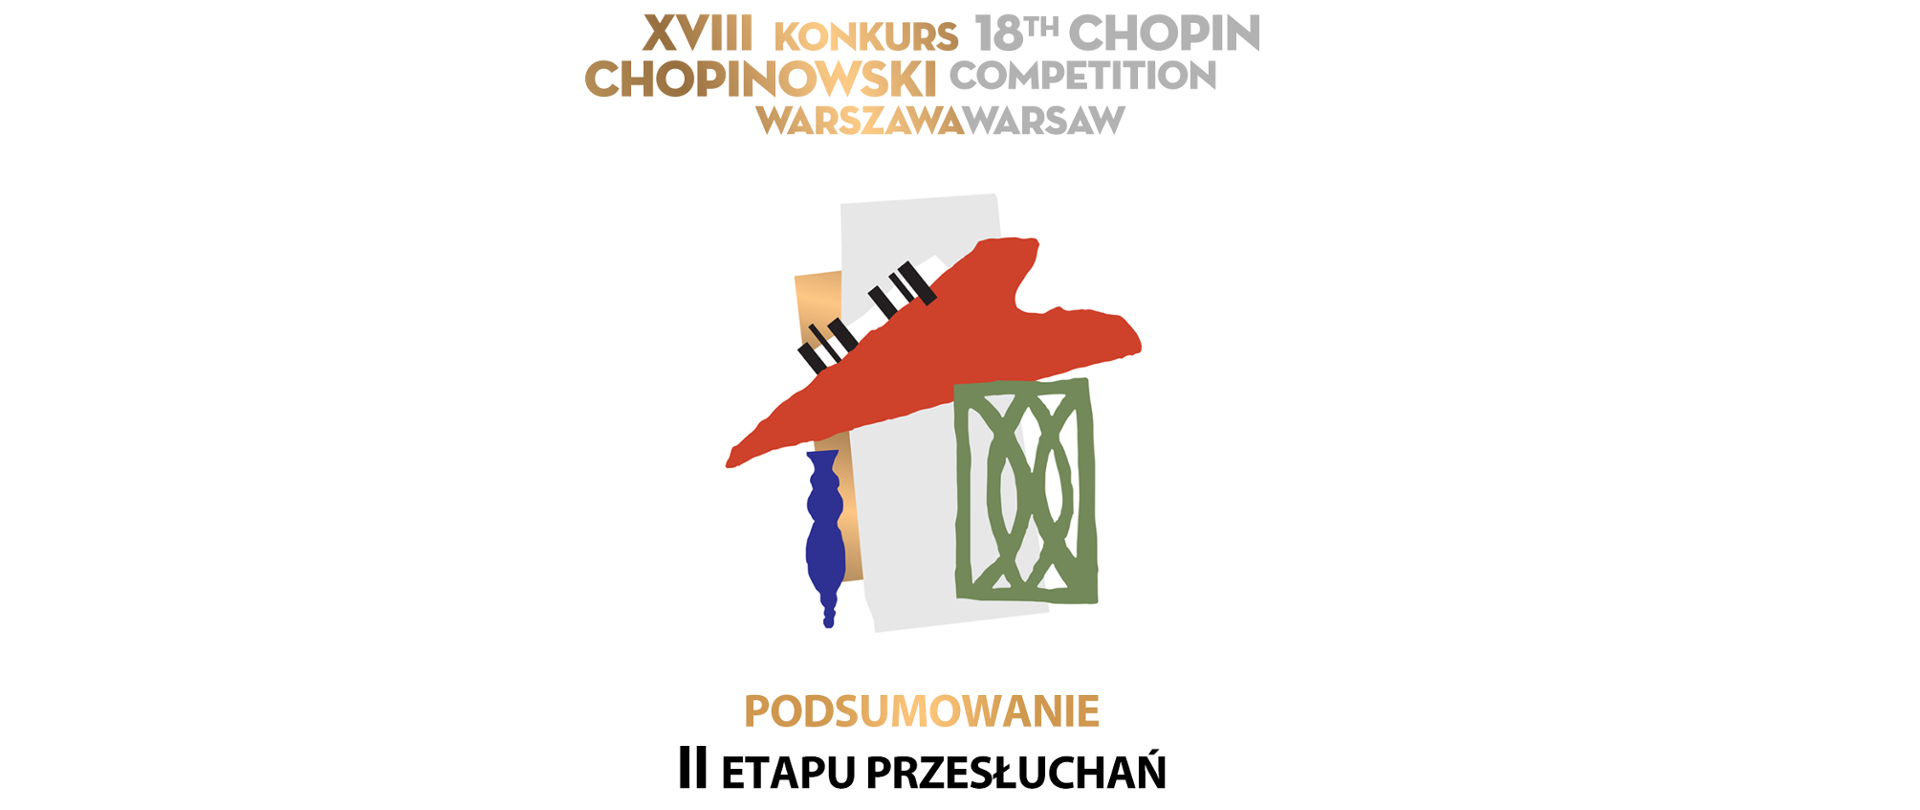 XVIII Konkurs Chopinowski - znamy wyniki II etapu przesłuchań! 